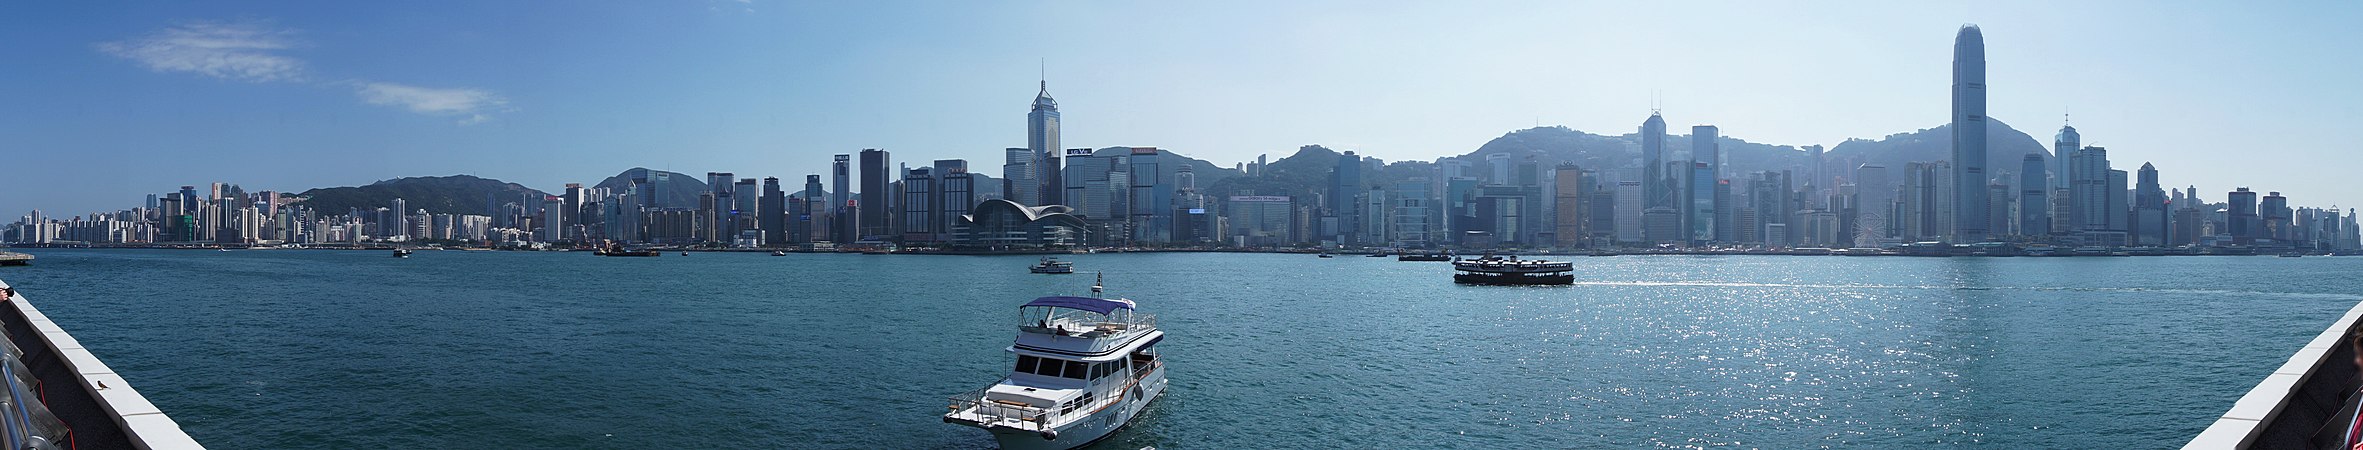 香港岛与九龙和新界同为香港三大地域之一，是香港开埠时最早发展的地区，也是香港的政治和经济中心。